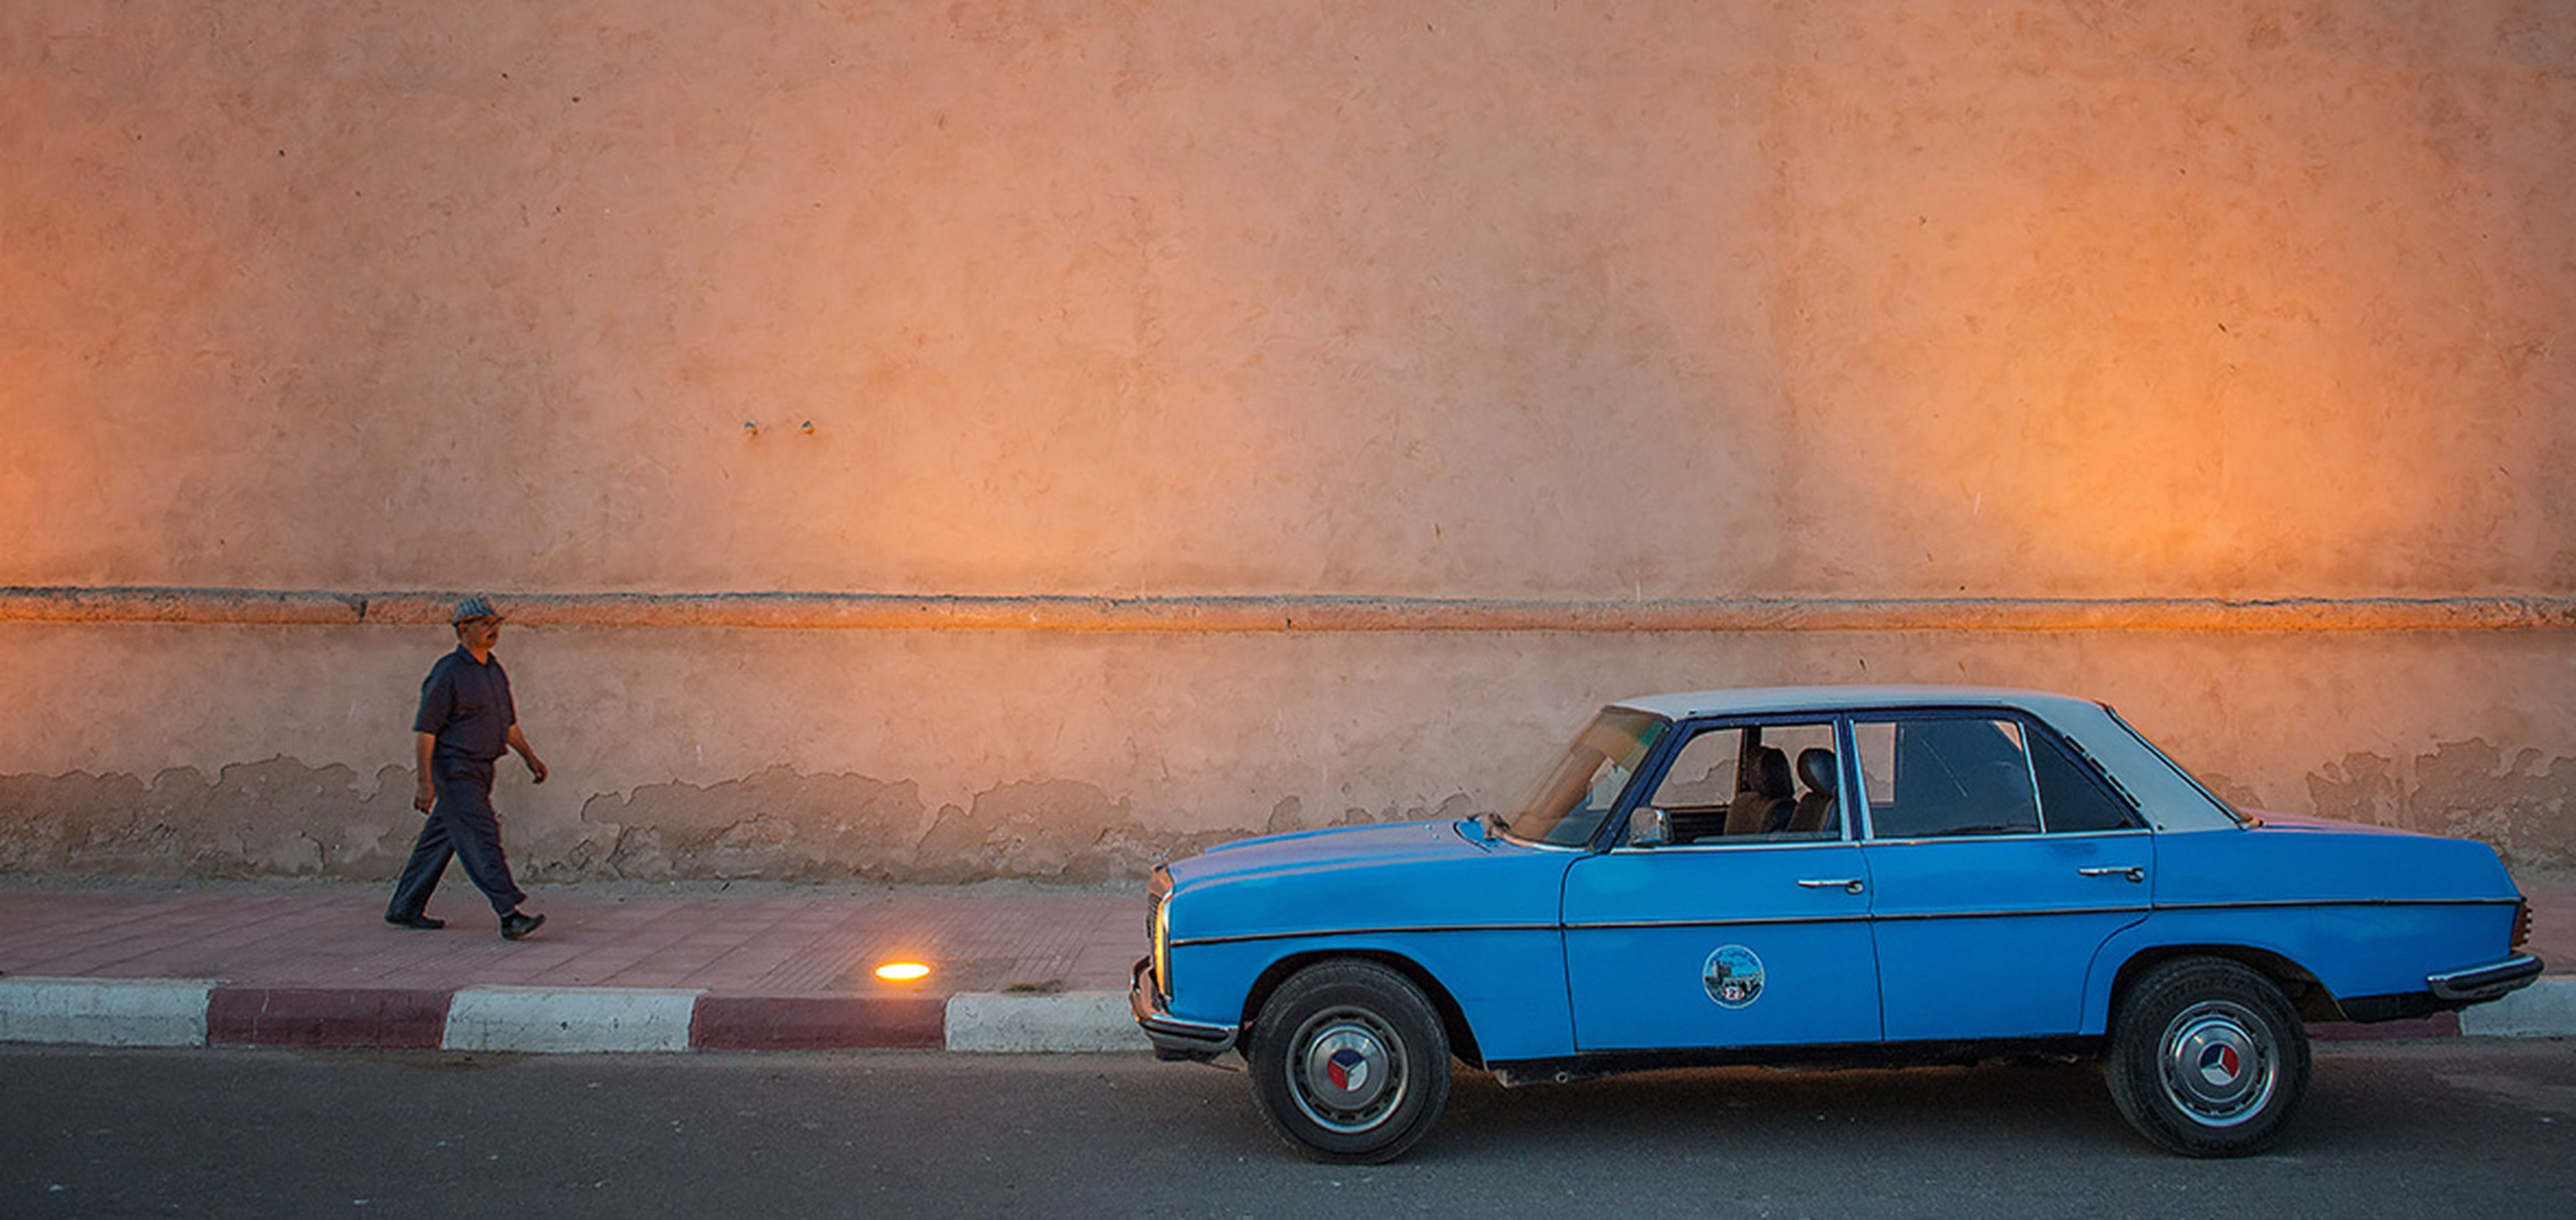 La historia de amor de Mercedes-Benz es un taxista marroquí